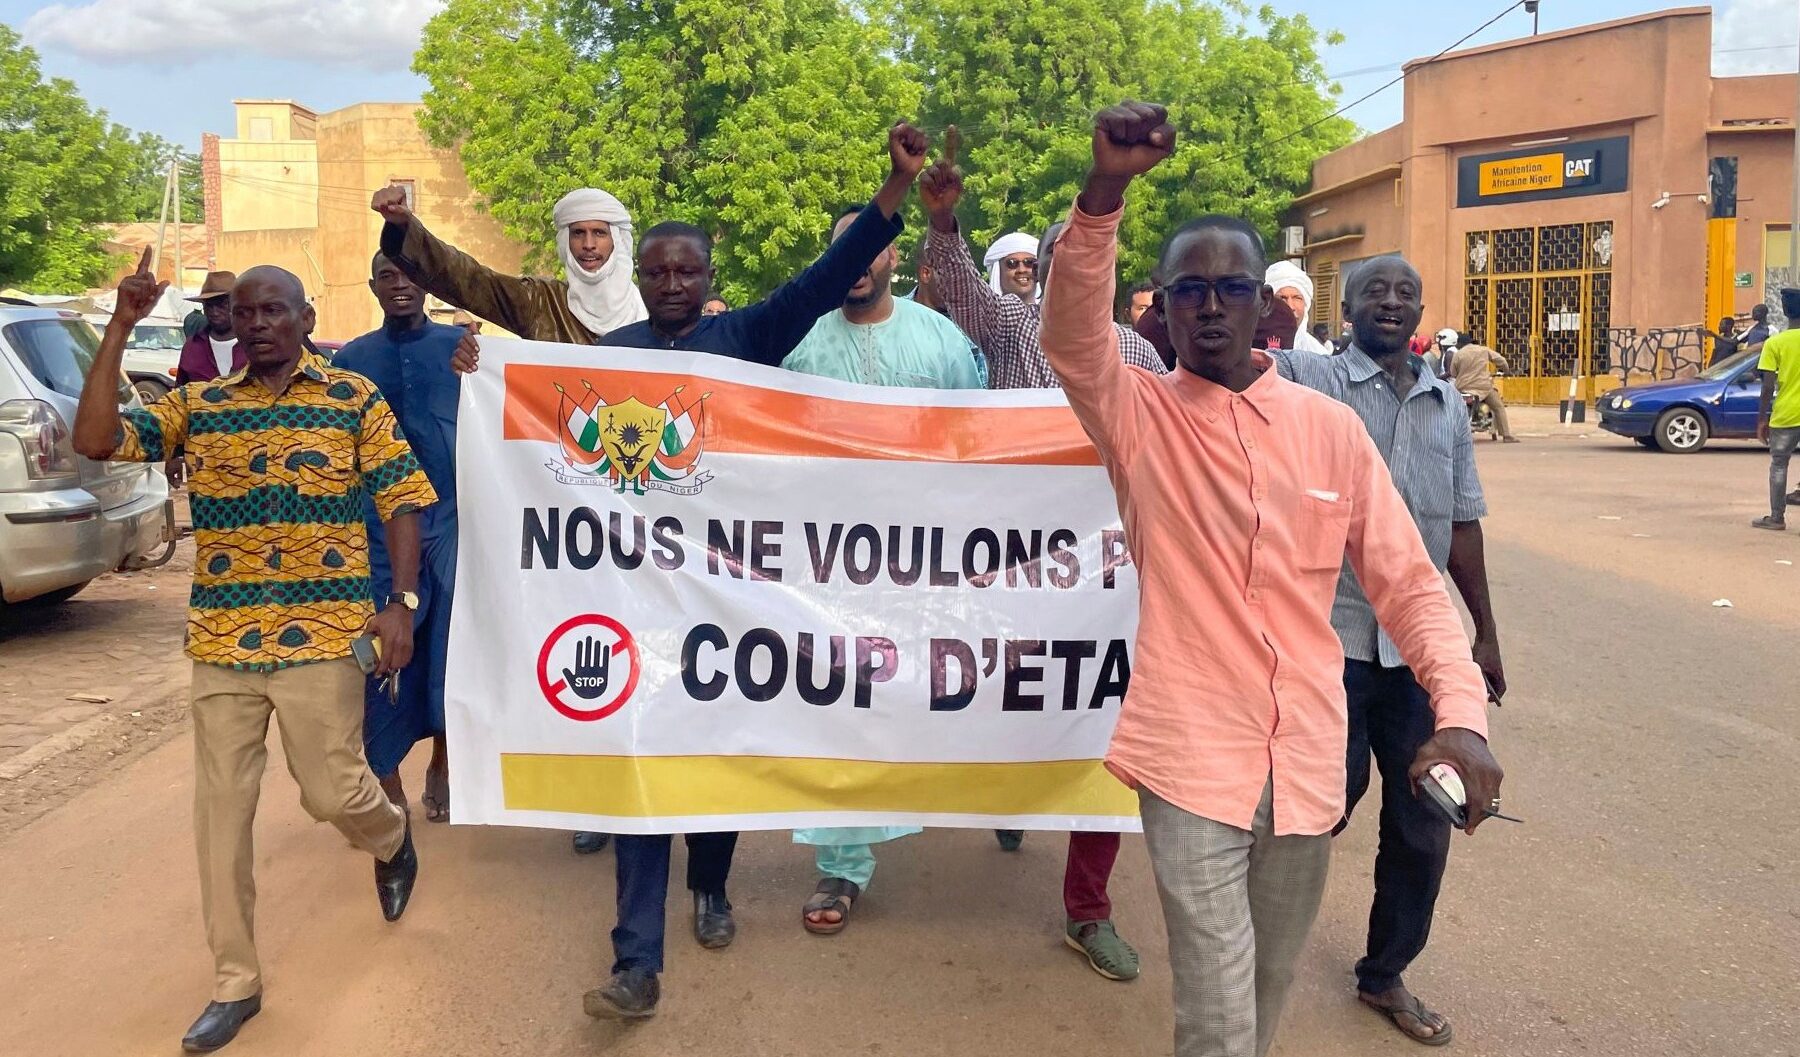 Golpe in Niger: perché il caos potrebbe aumentare l' influenza della Russia in Africa occidentale